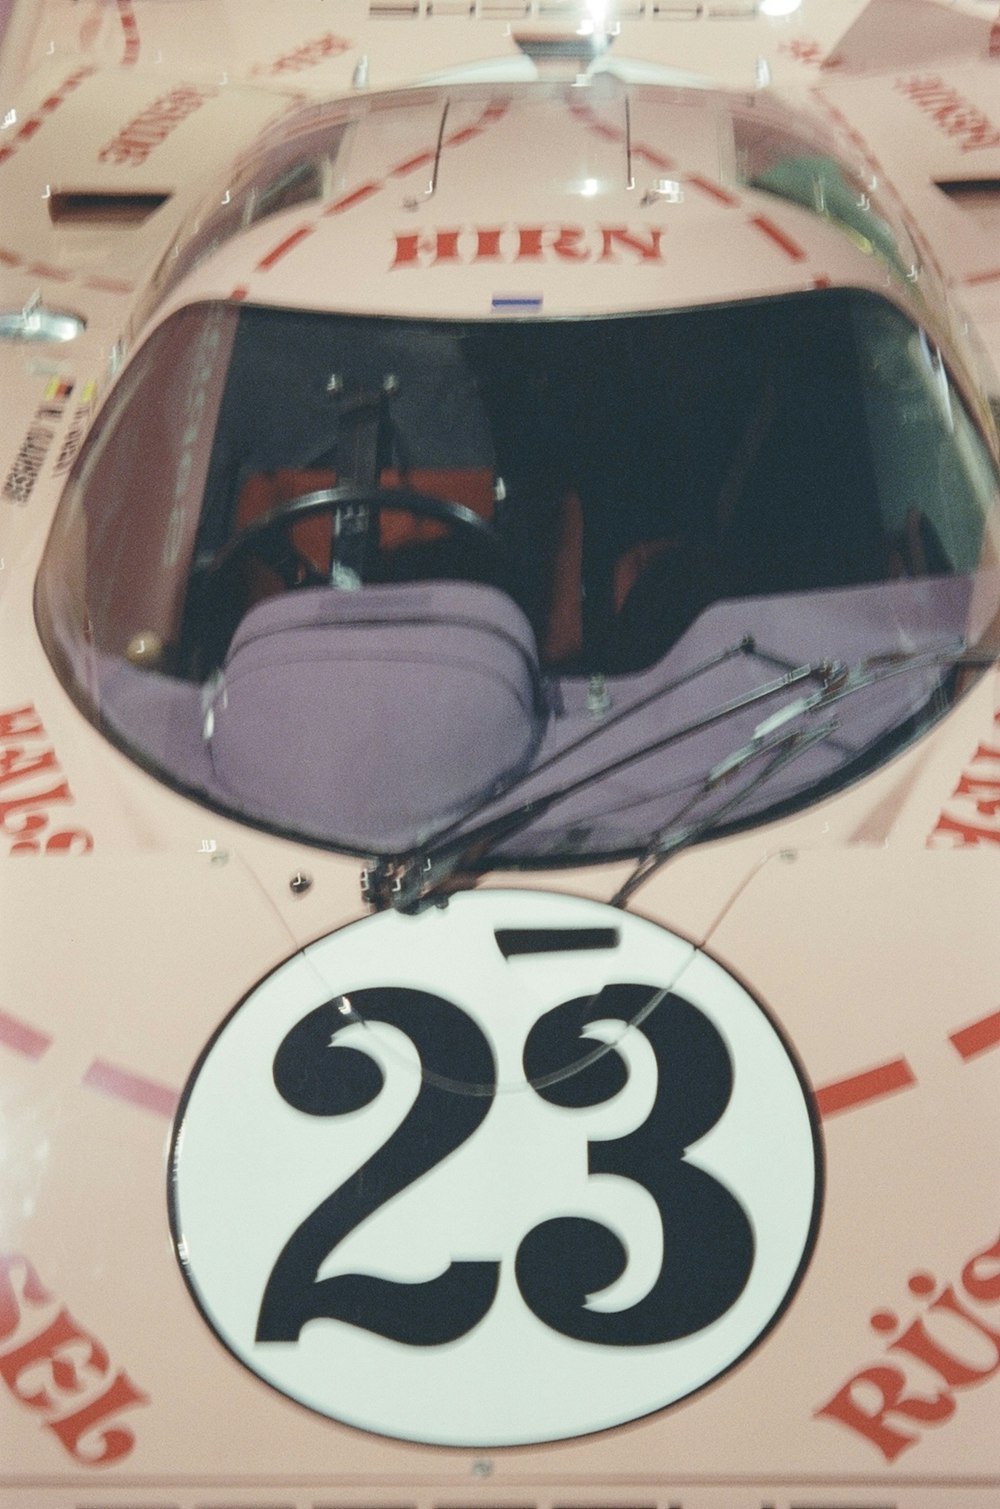 um close up de um carro com um número nele